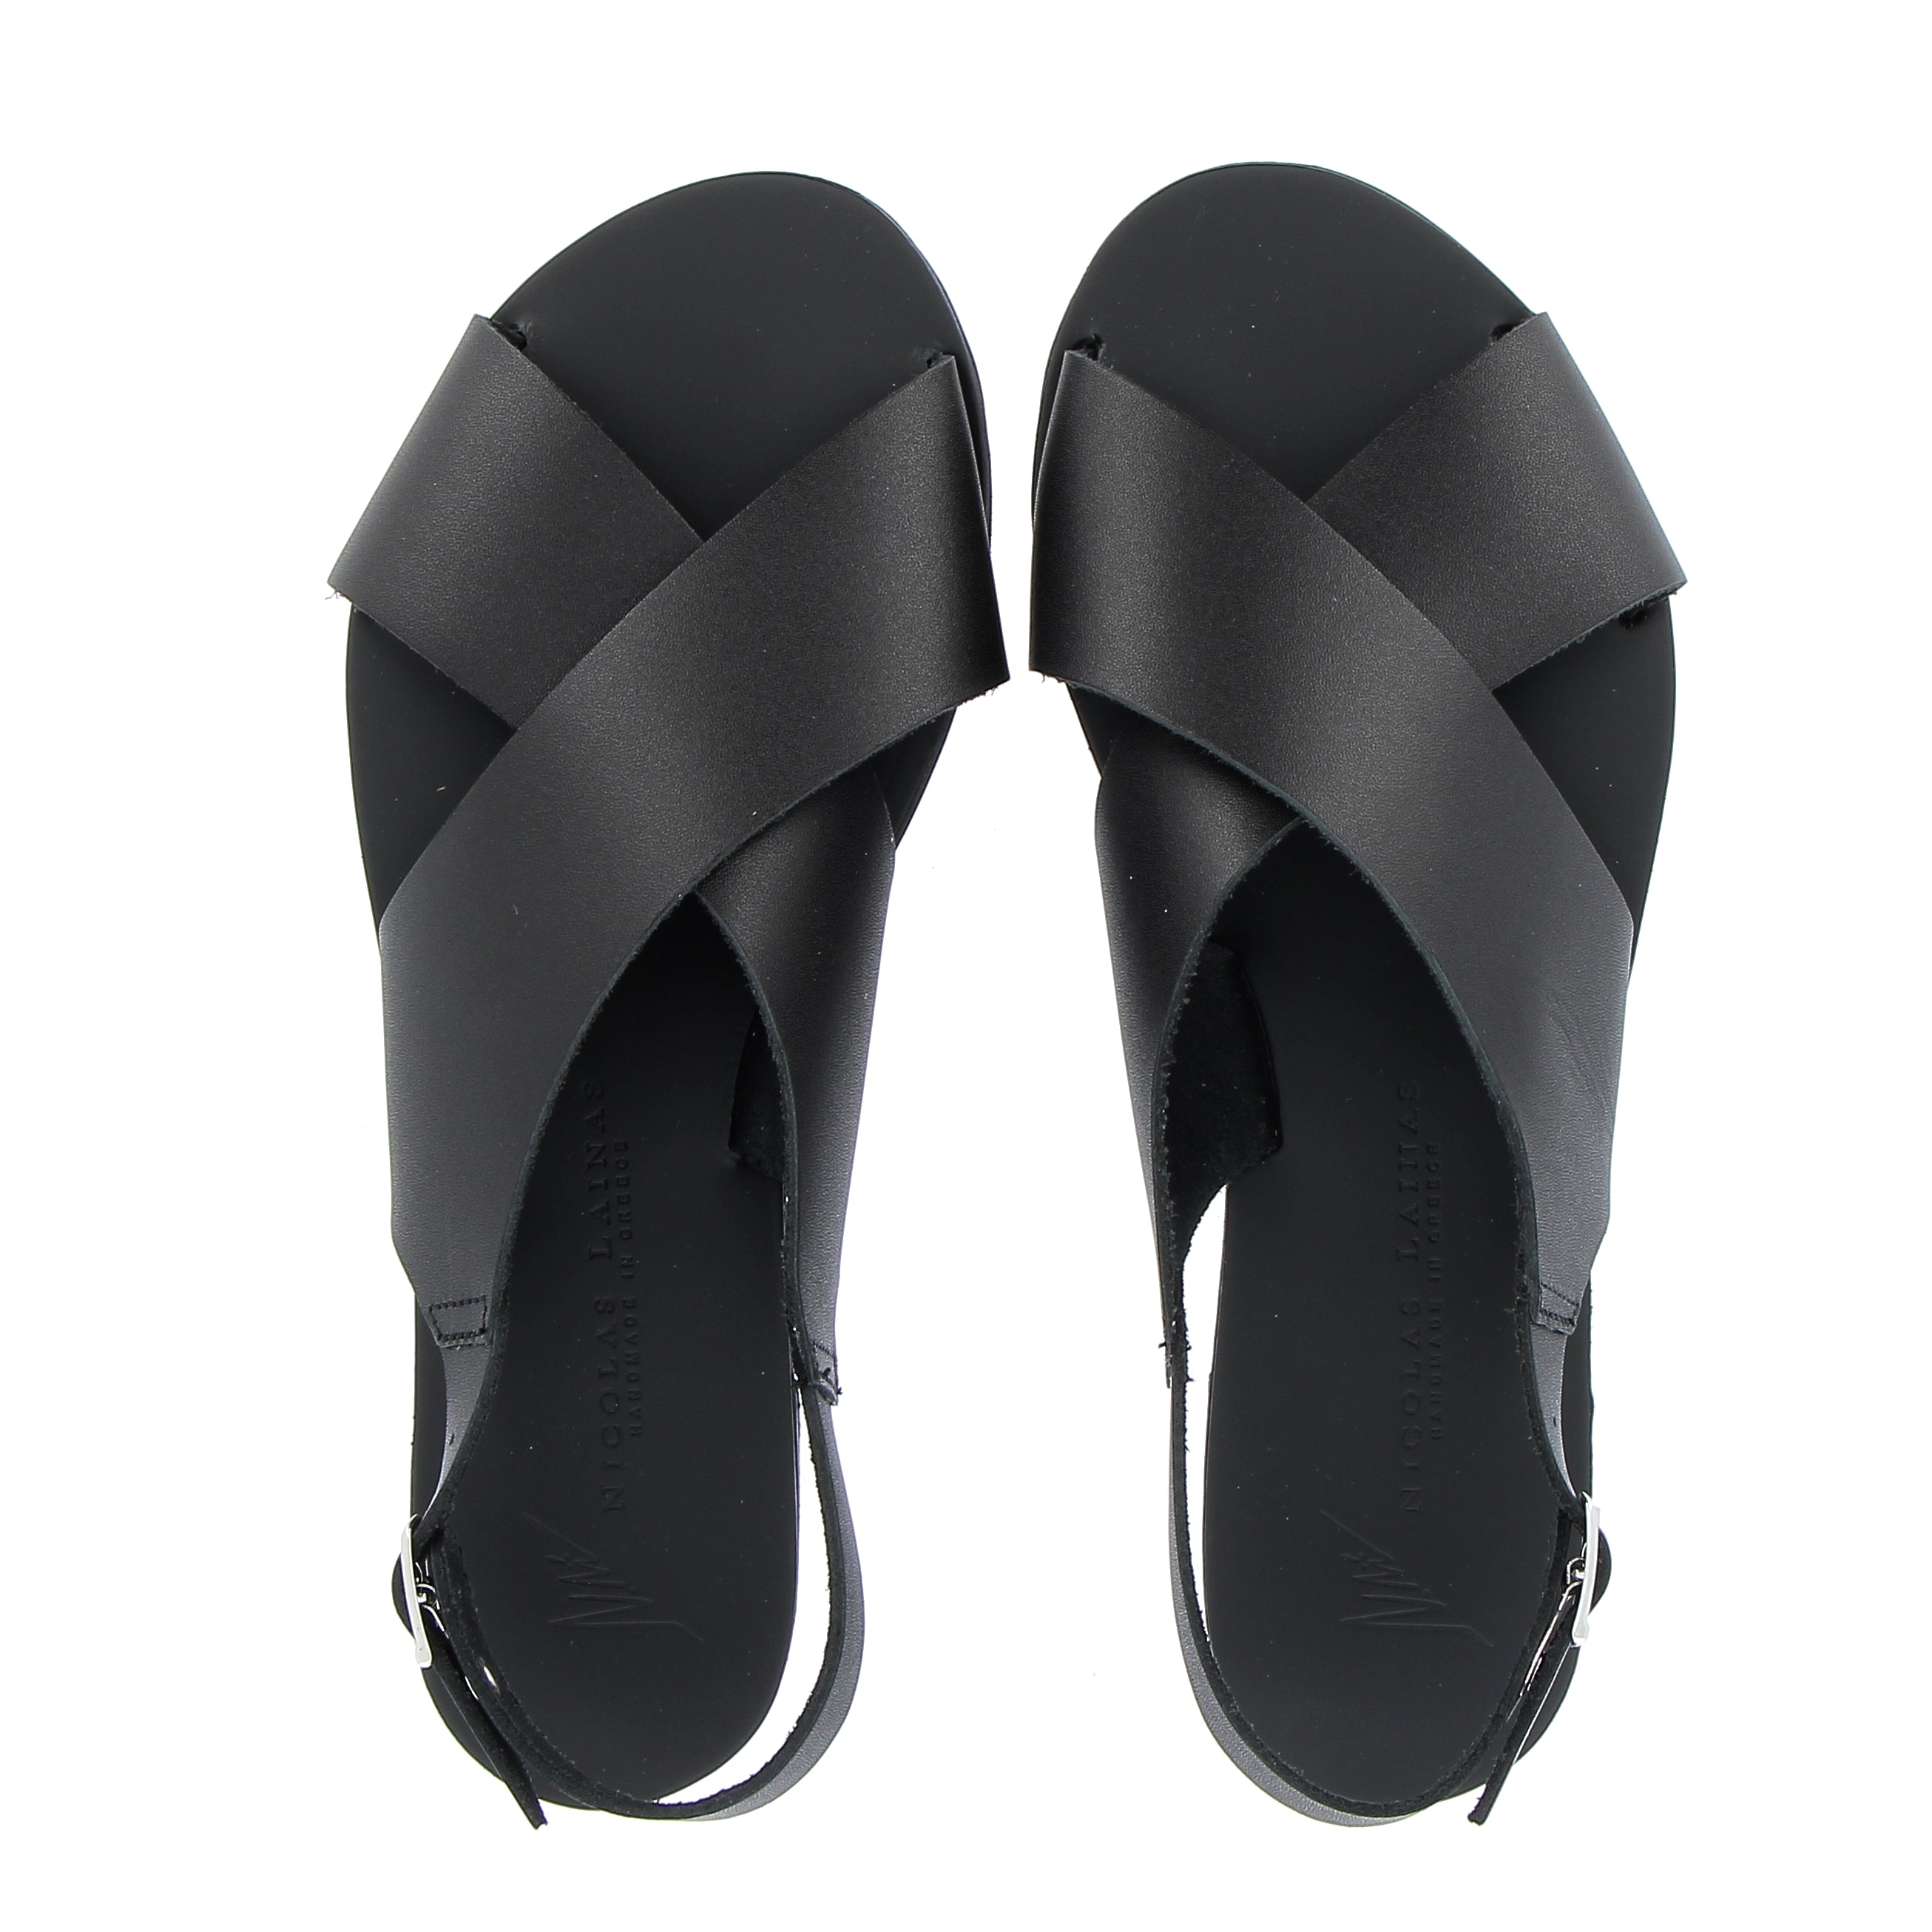 Crossed flat black leather sandal